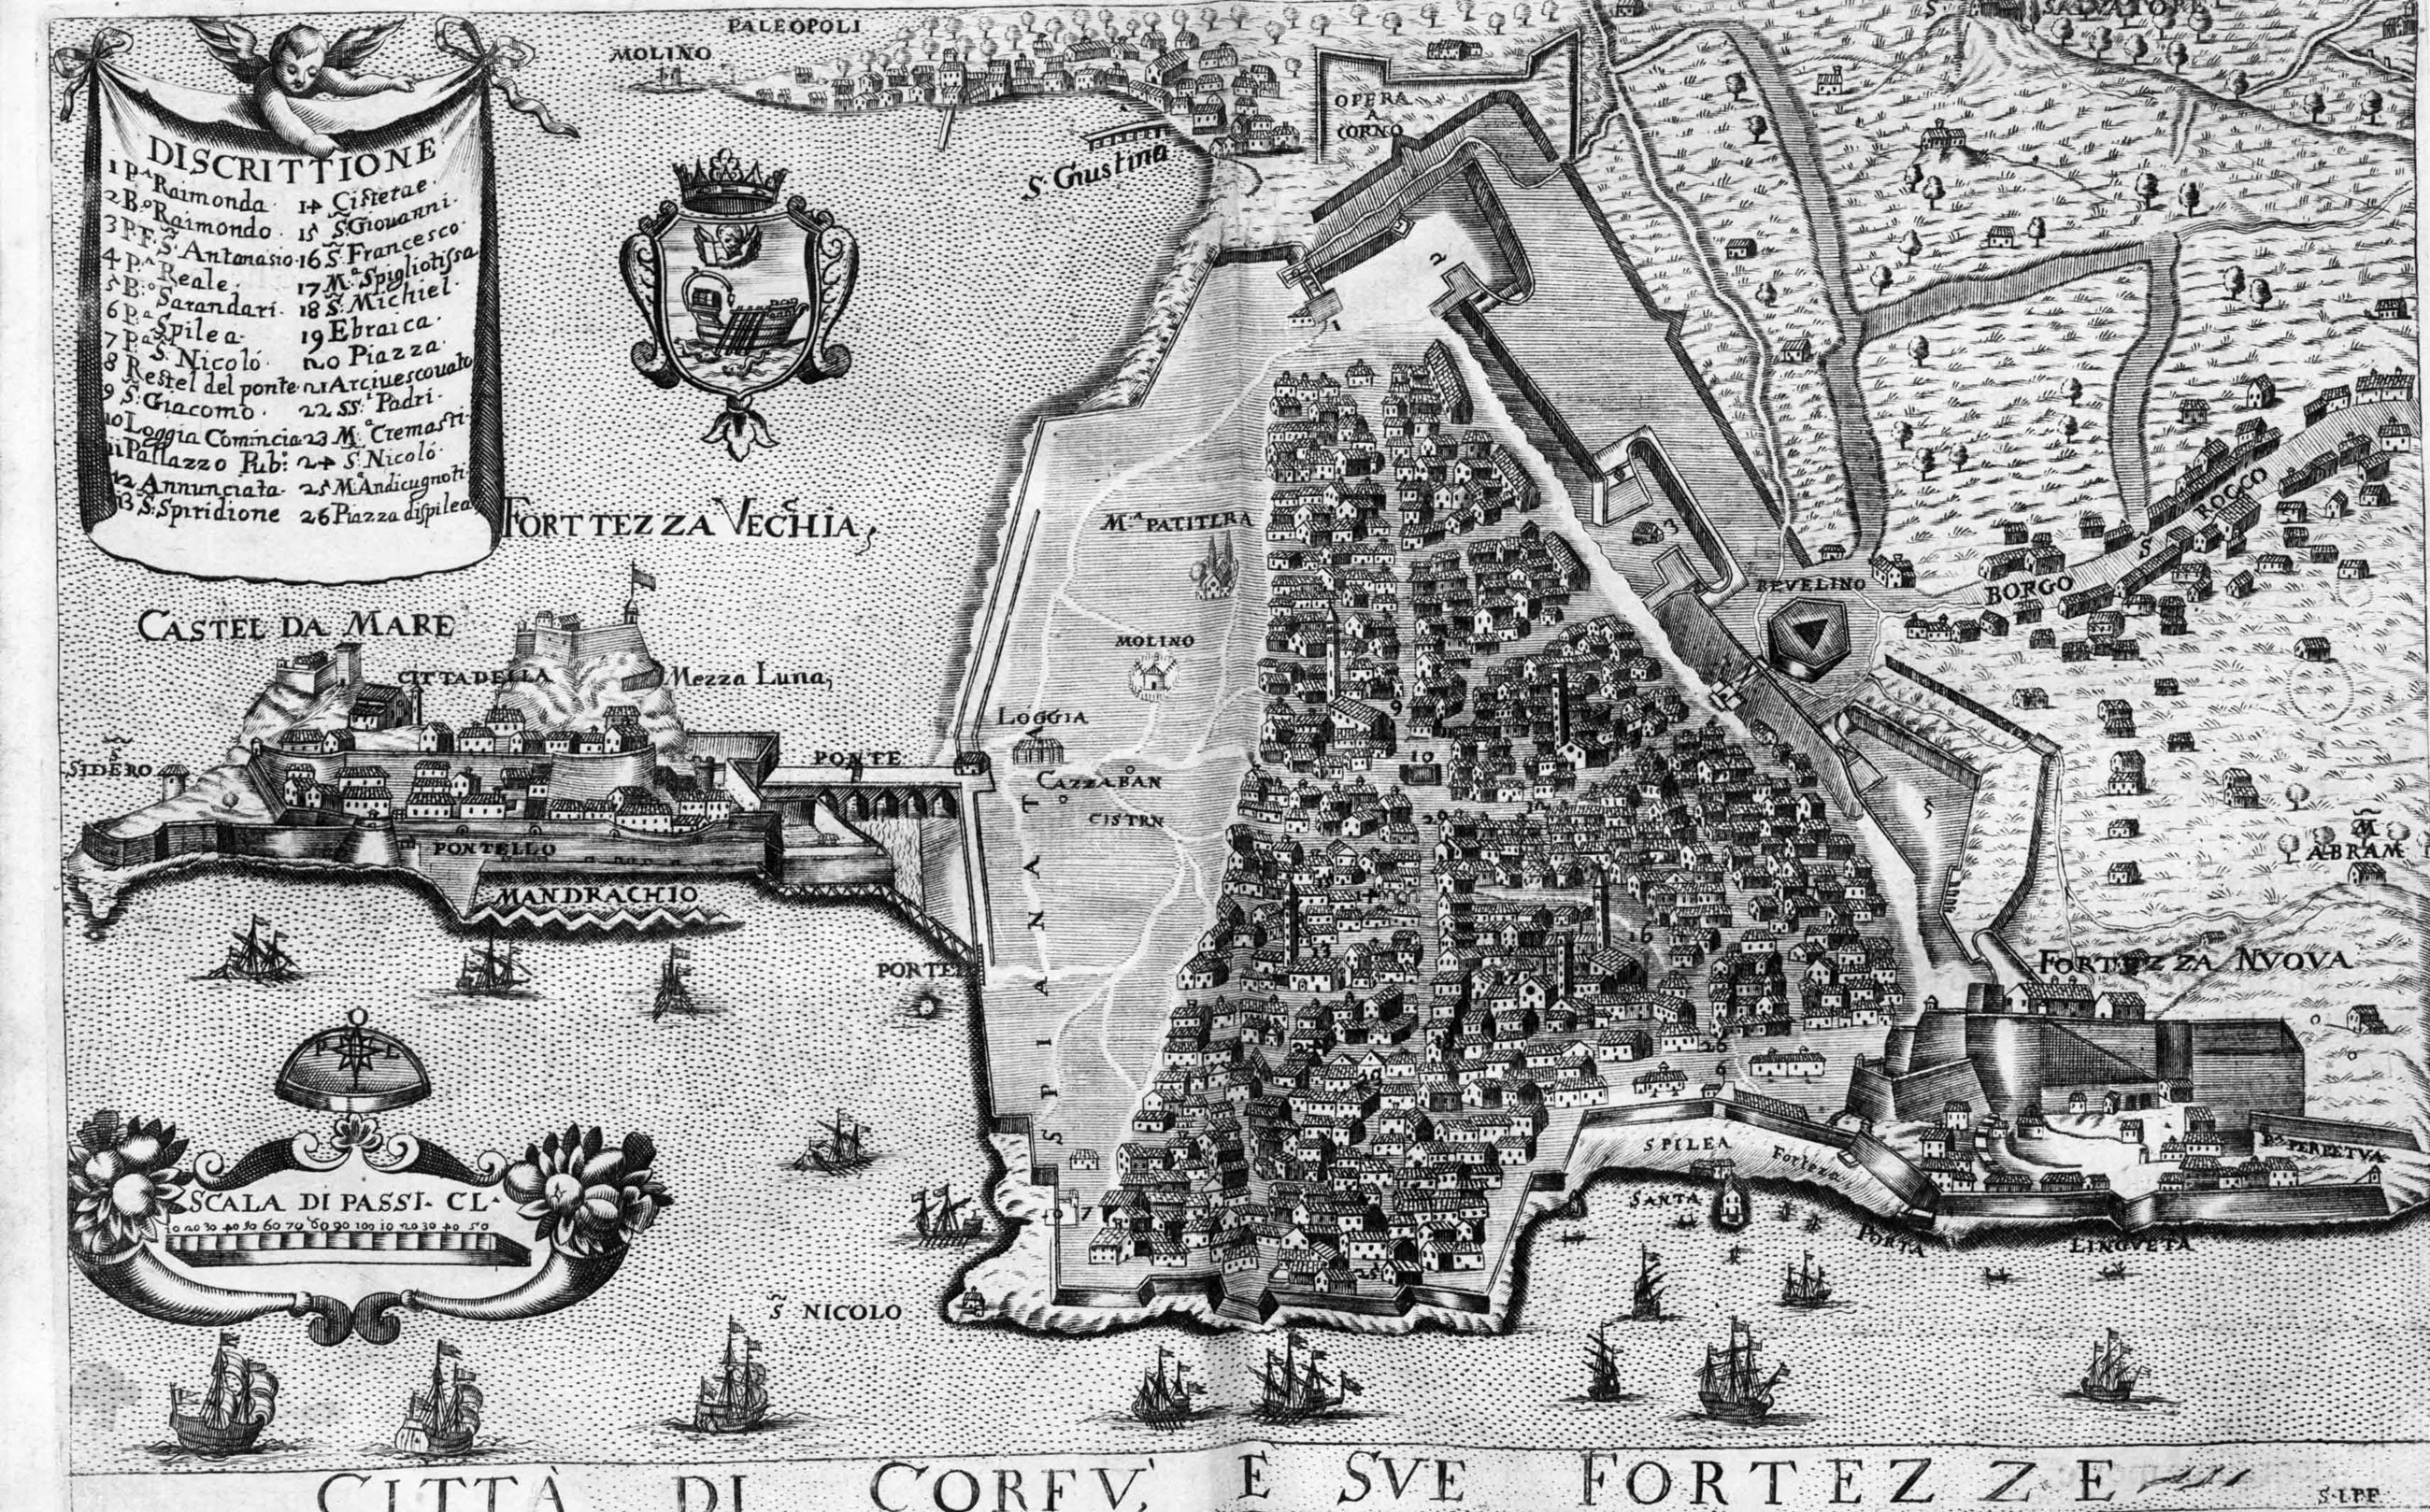 1700¿. Citta di Corfu e sue Fortezze